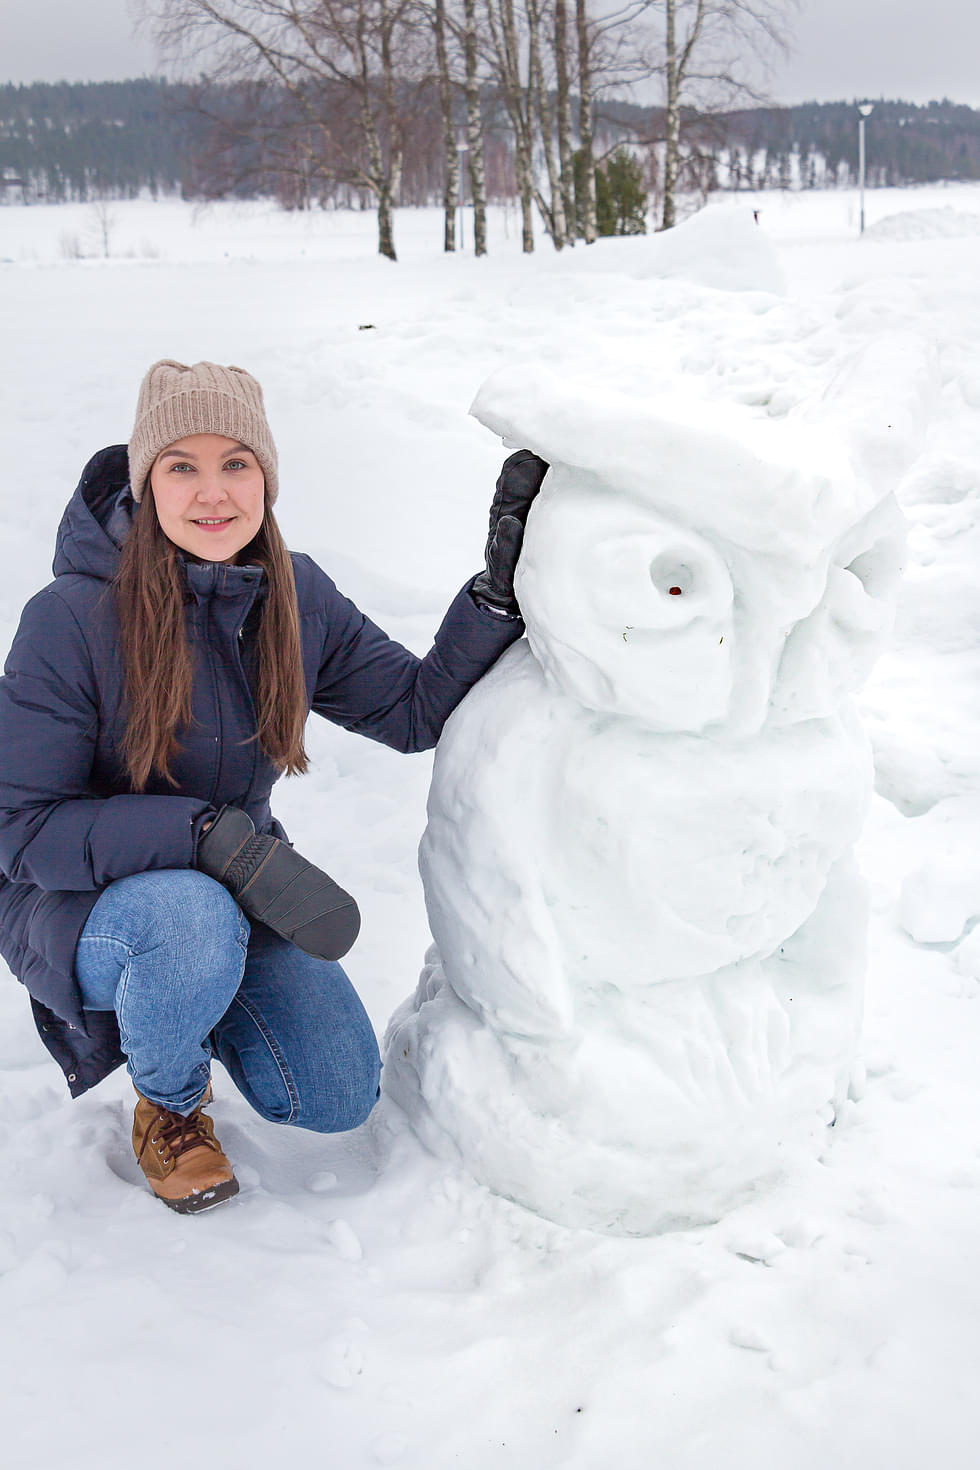 Hyvärilän pihan lumiveistokset ovat ukrainalaisten perheleirin satoa tammikuun lopulta. Veistoksista Pöllö oli eniten Kati Lipposen mieleen.